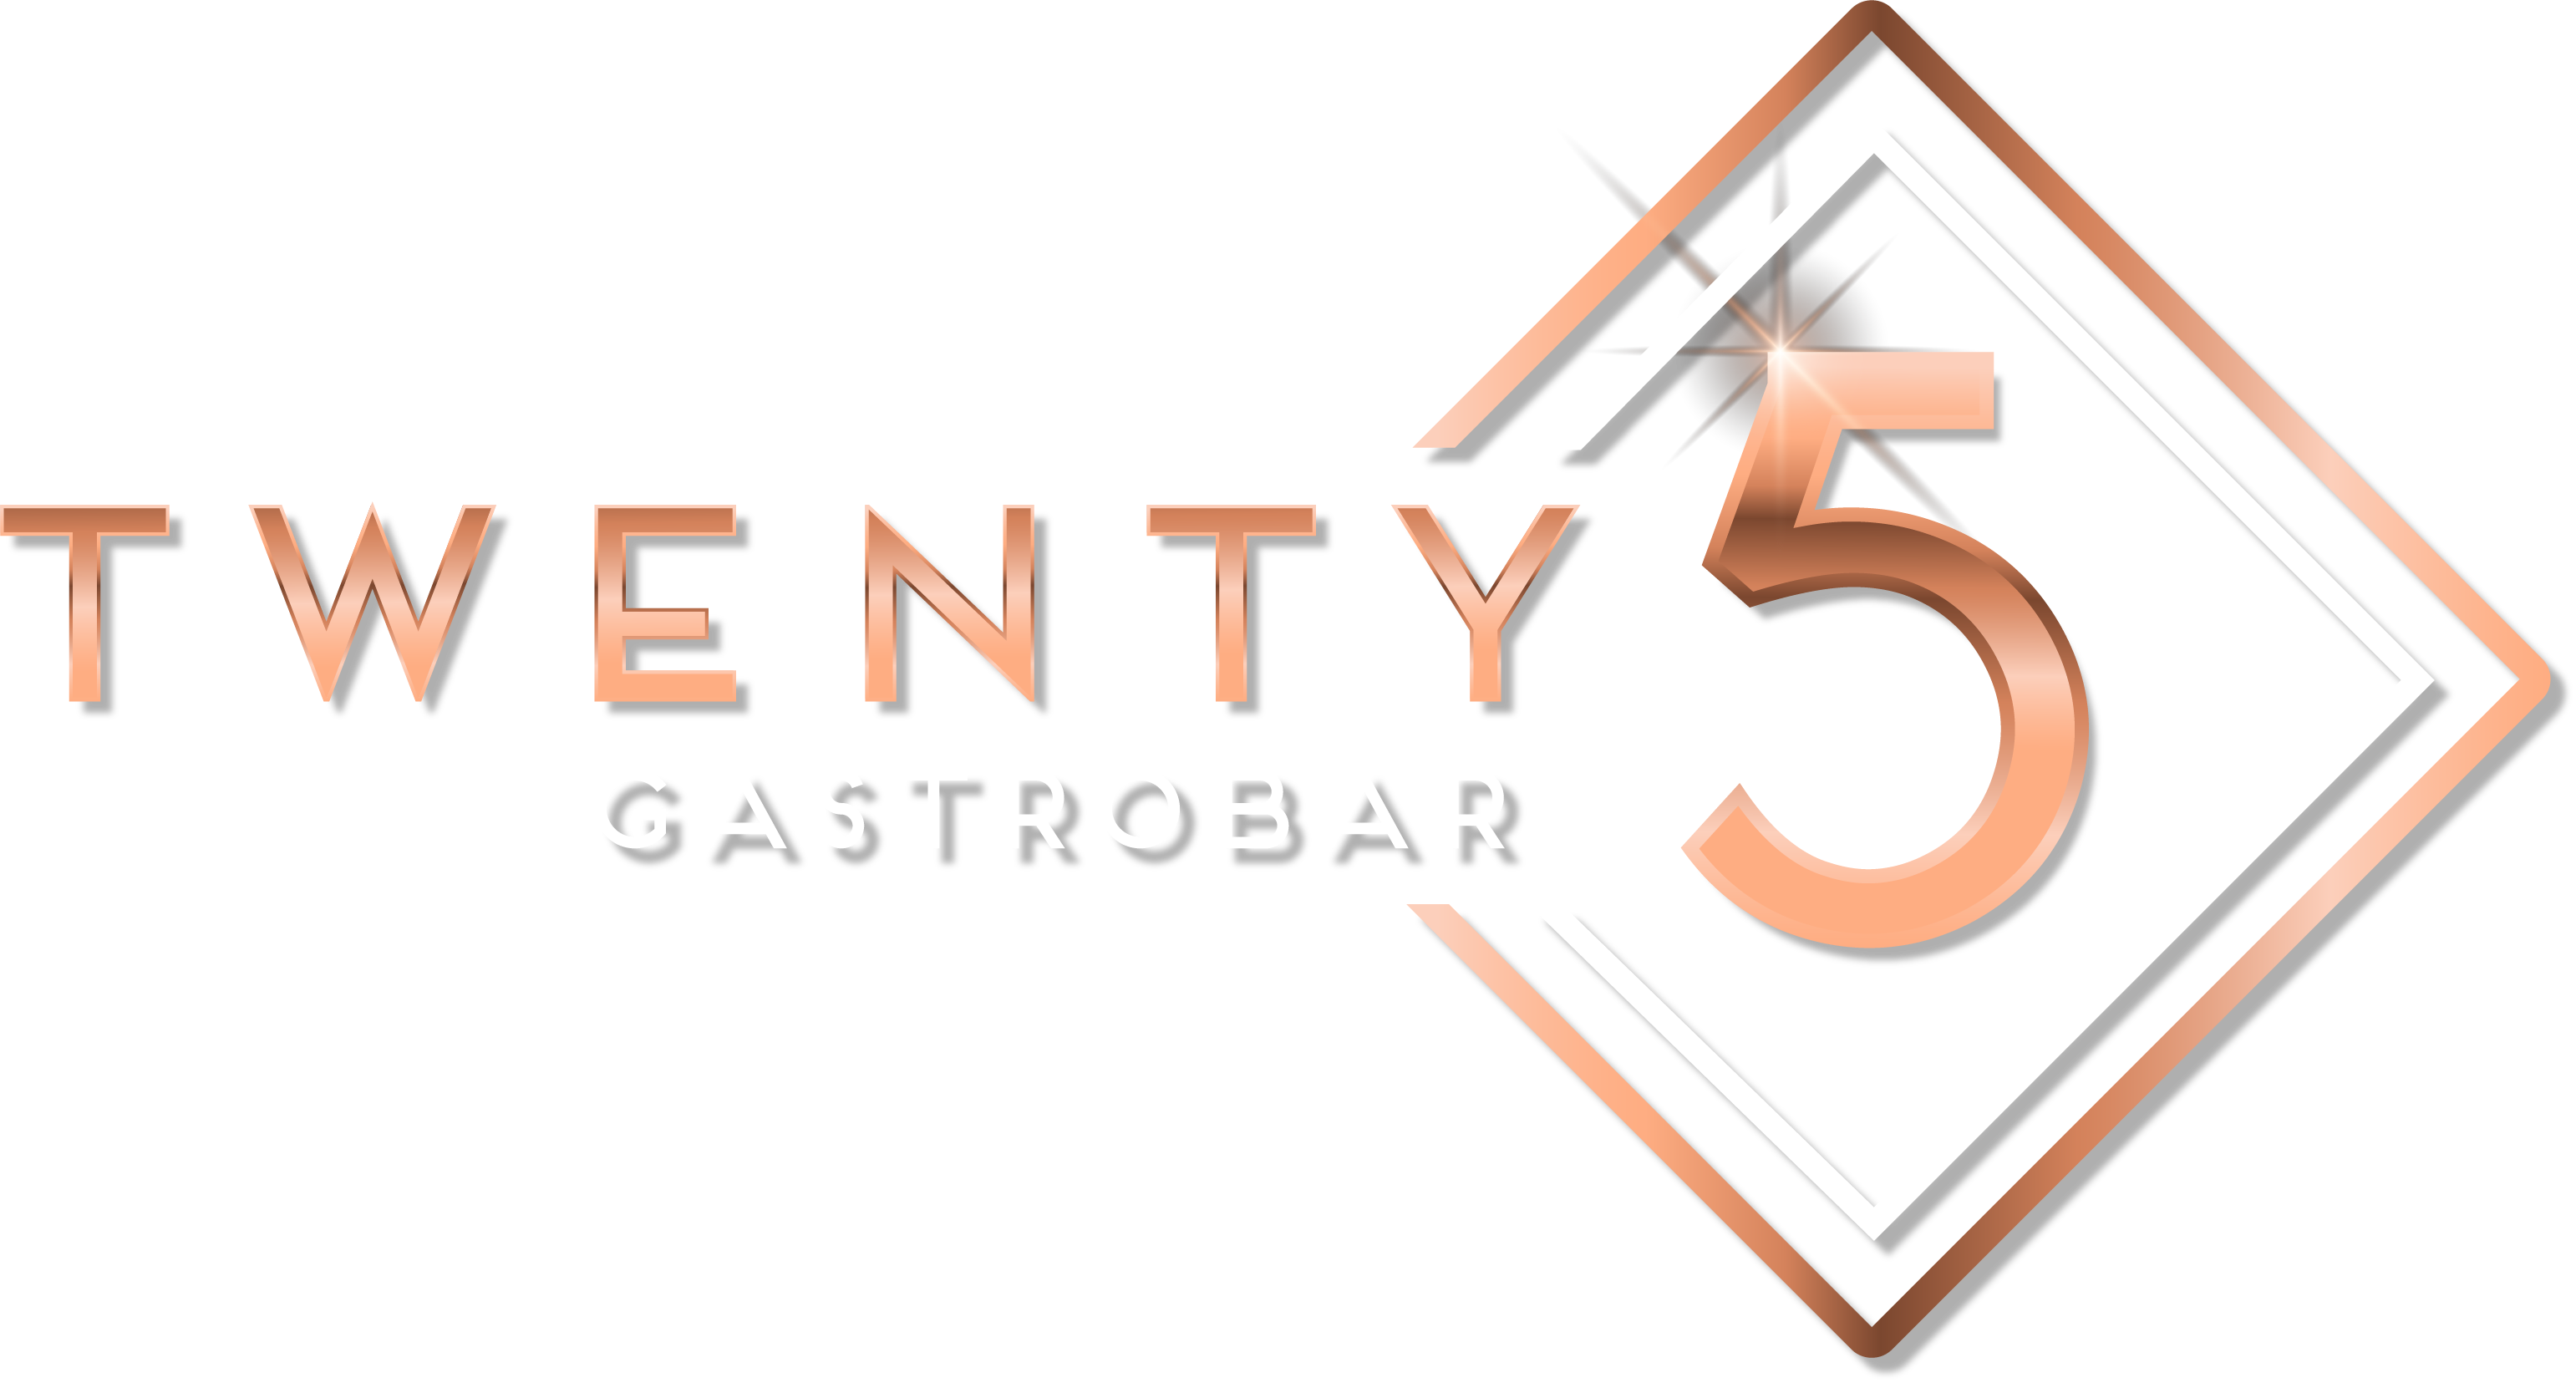 Gastrobar Twenty 5